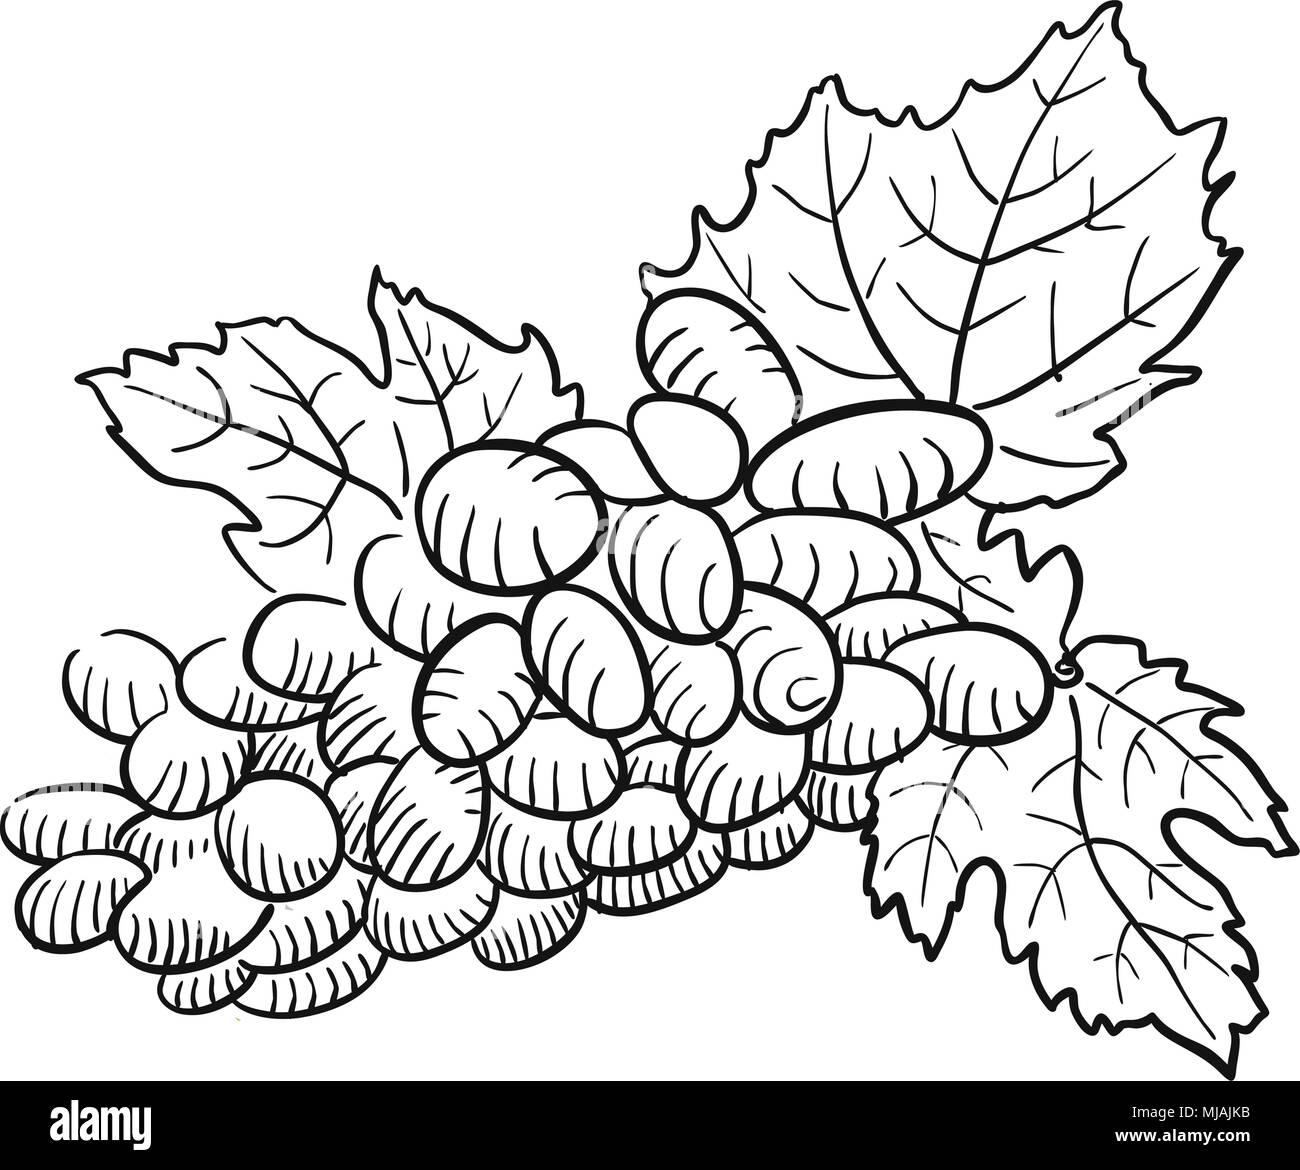 Abbozzate uva con foglie e in bianco e nero, disegnati a mano oggetti grafici vettoriali Illustrazione Vettoriale